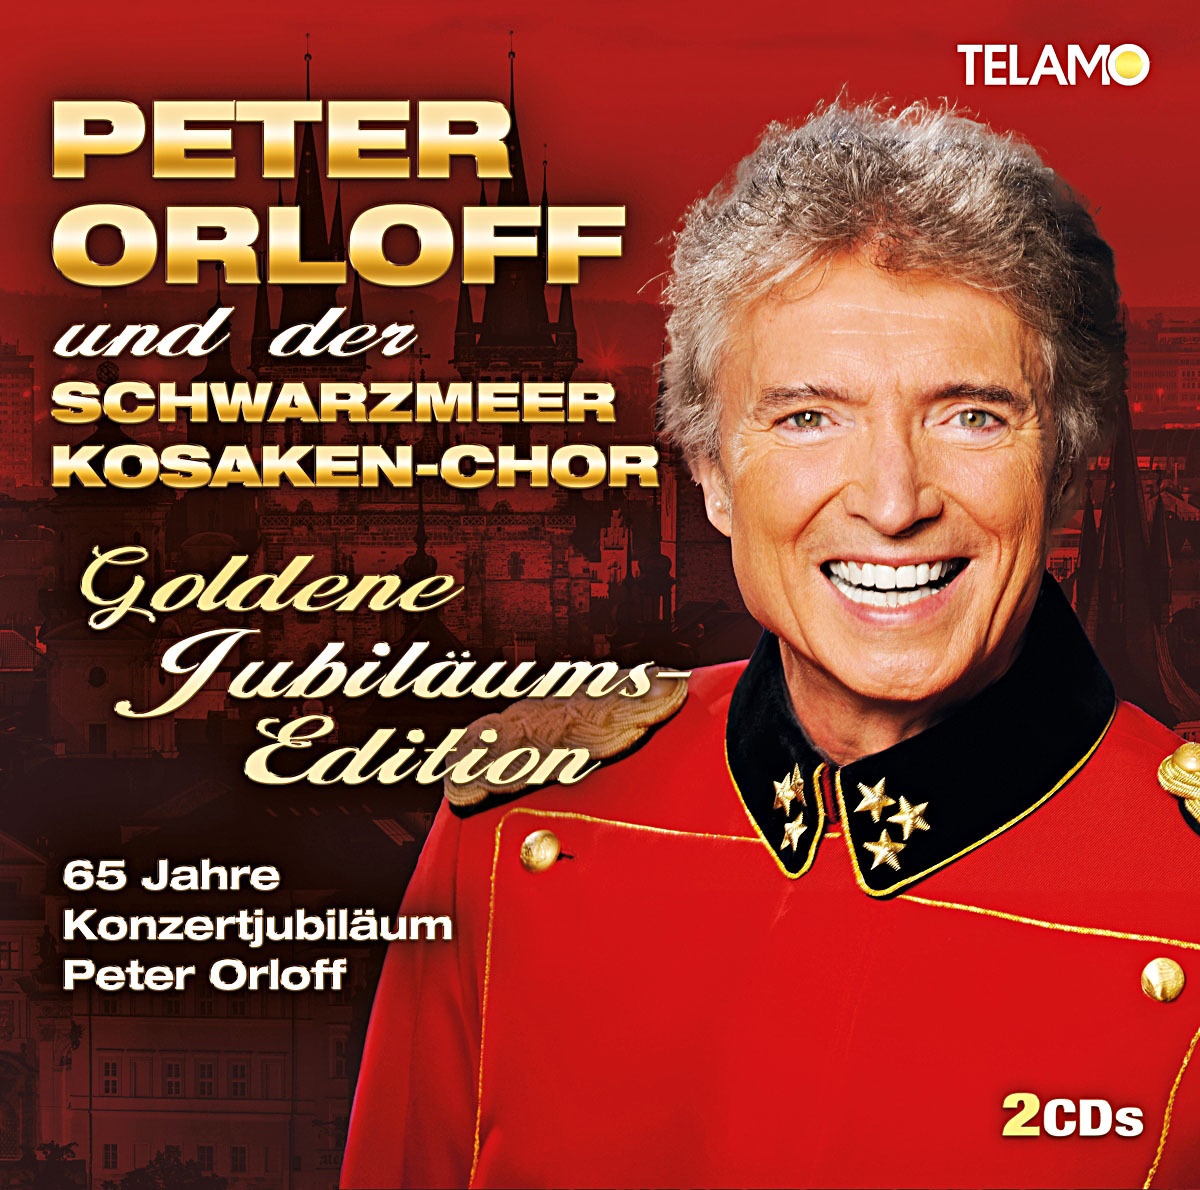 Goldene Jubiläums-Edition (2 CDs) - Peter Orloff & Der Schwarzmeer Kosaken-chor. (CD)